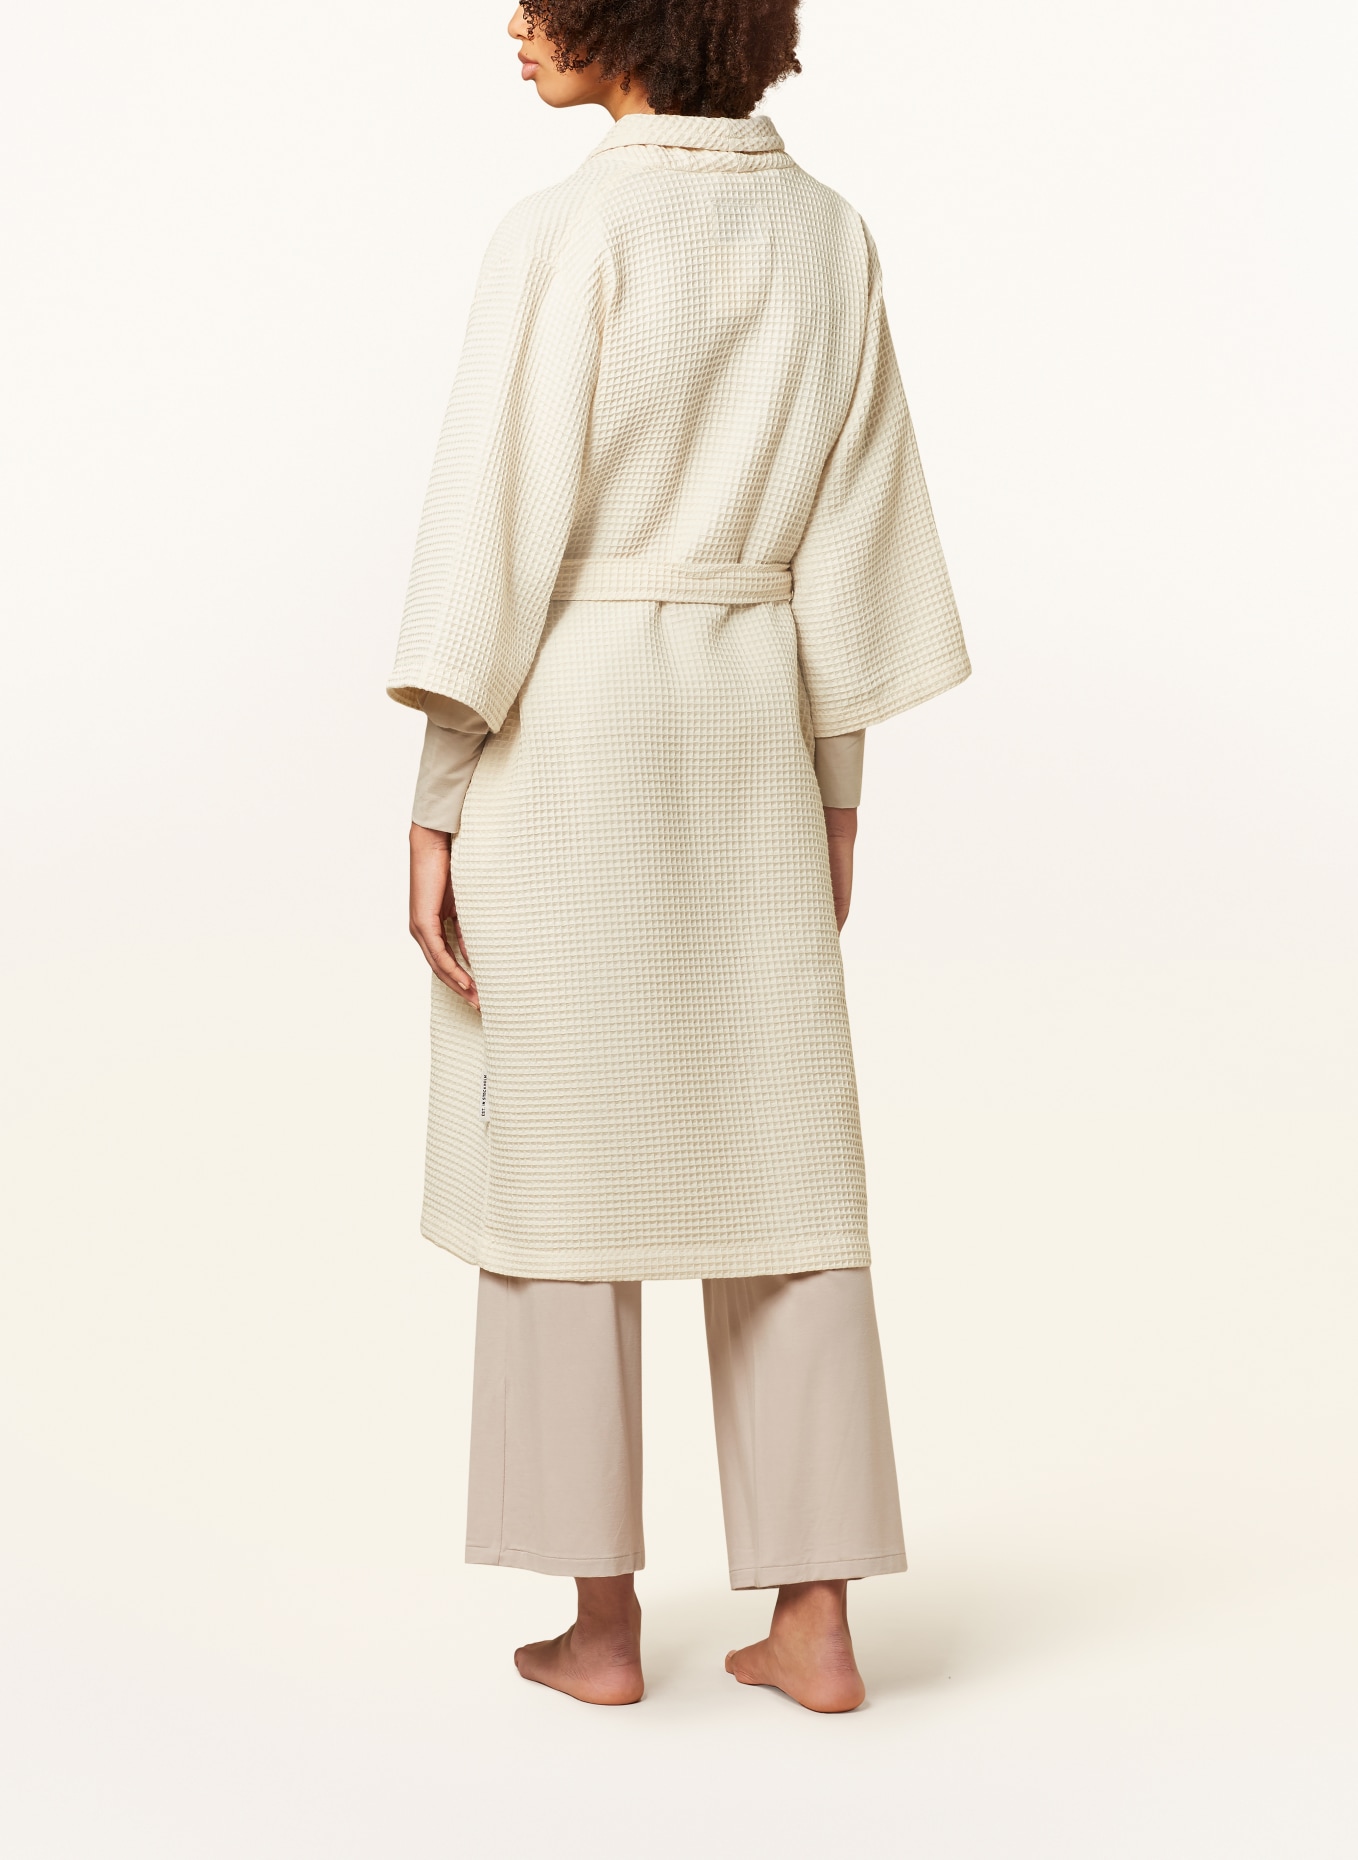 Marc O'Polo Women’s bathrobe, Color: ECRU (Image 3)